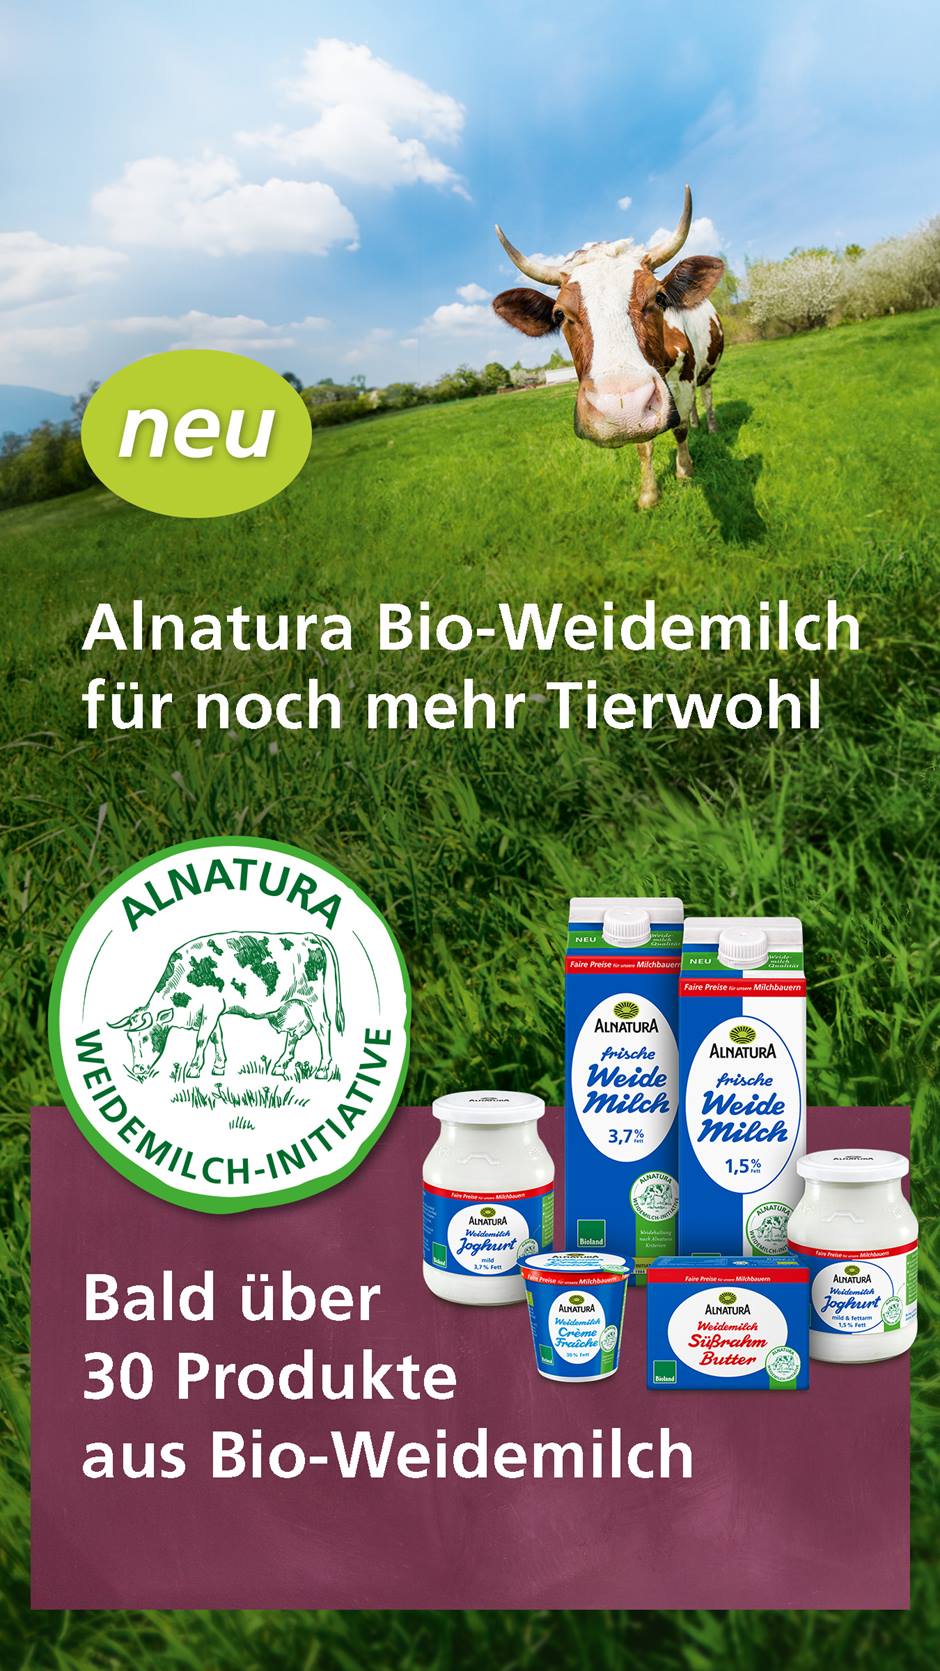 Weitwinkelaufnahme einer Kuh auf der Weide. Davor Siegel der "Alnatura Weidemilch-Initiative" mit sechs Alnatura Weidemilch-Produkten.